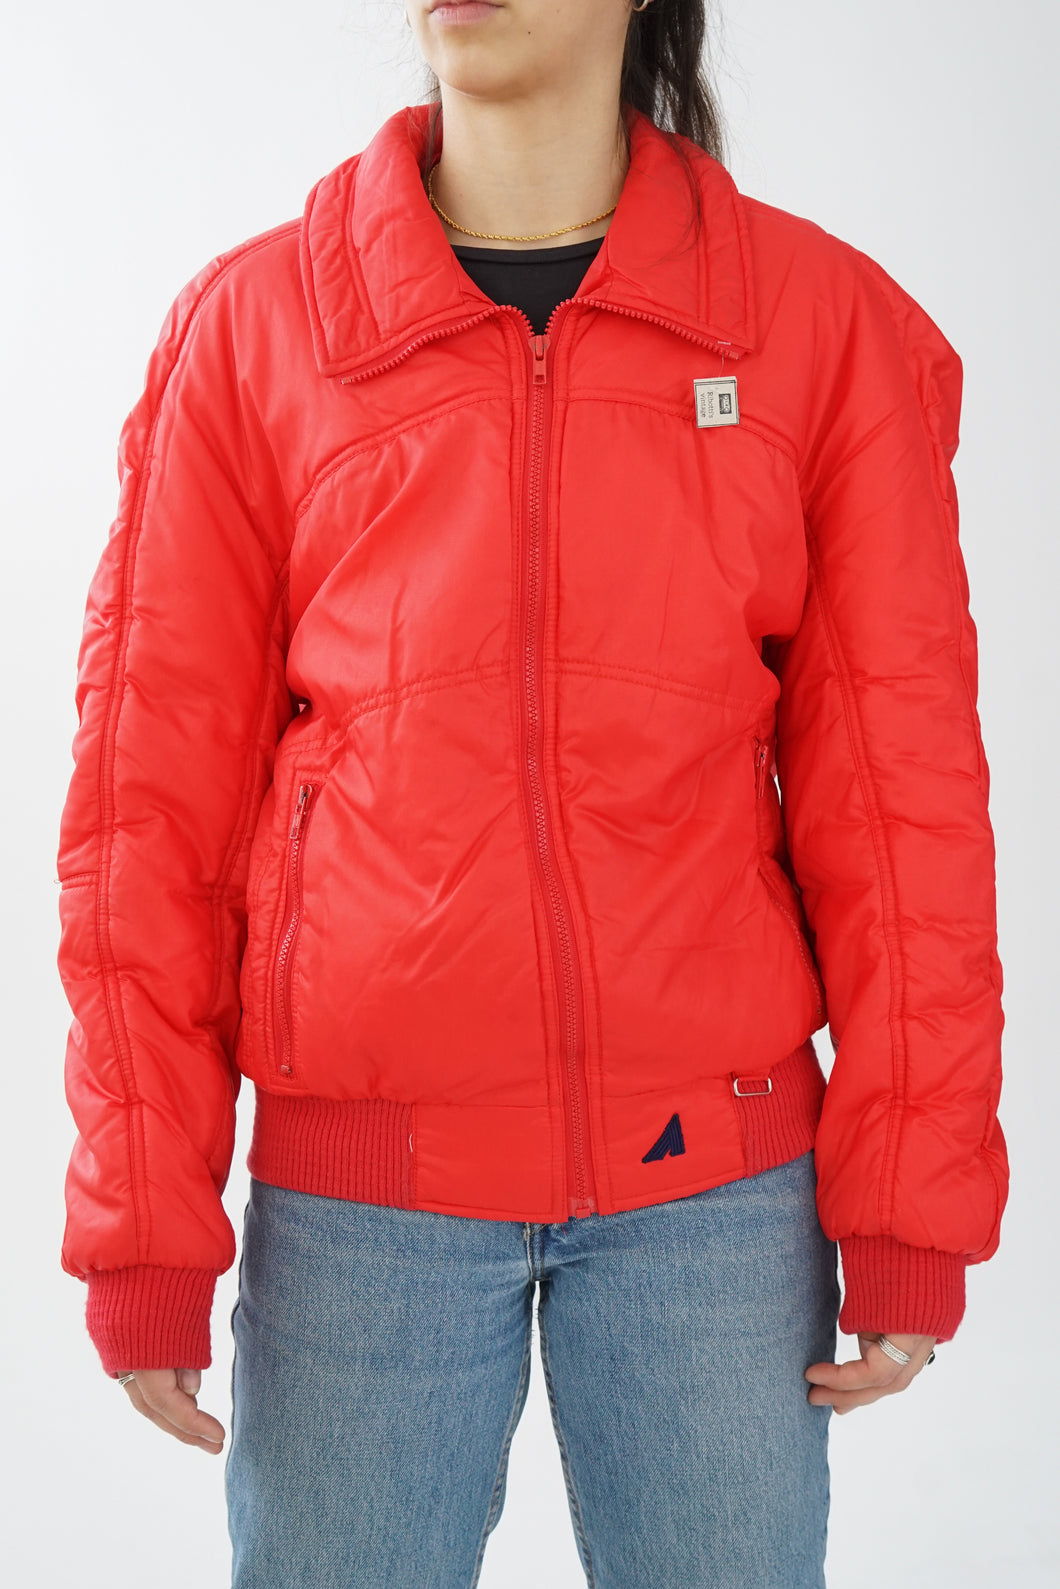 Alpine ski jacket